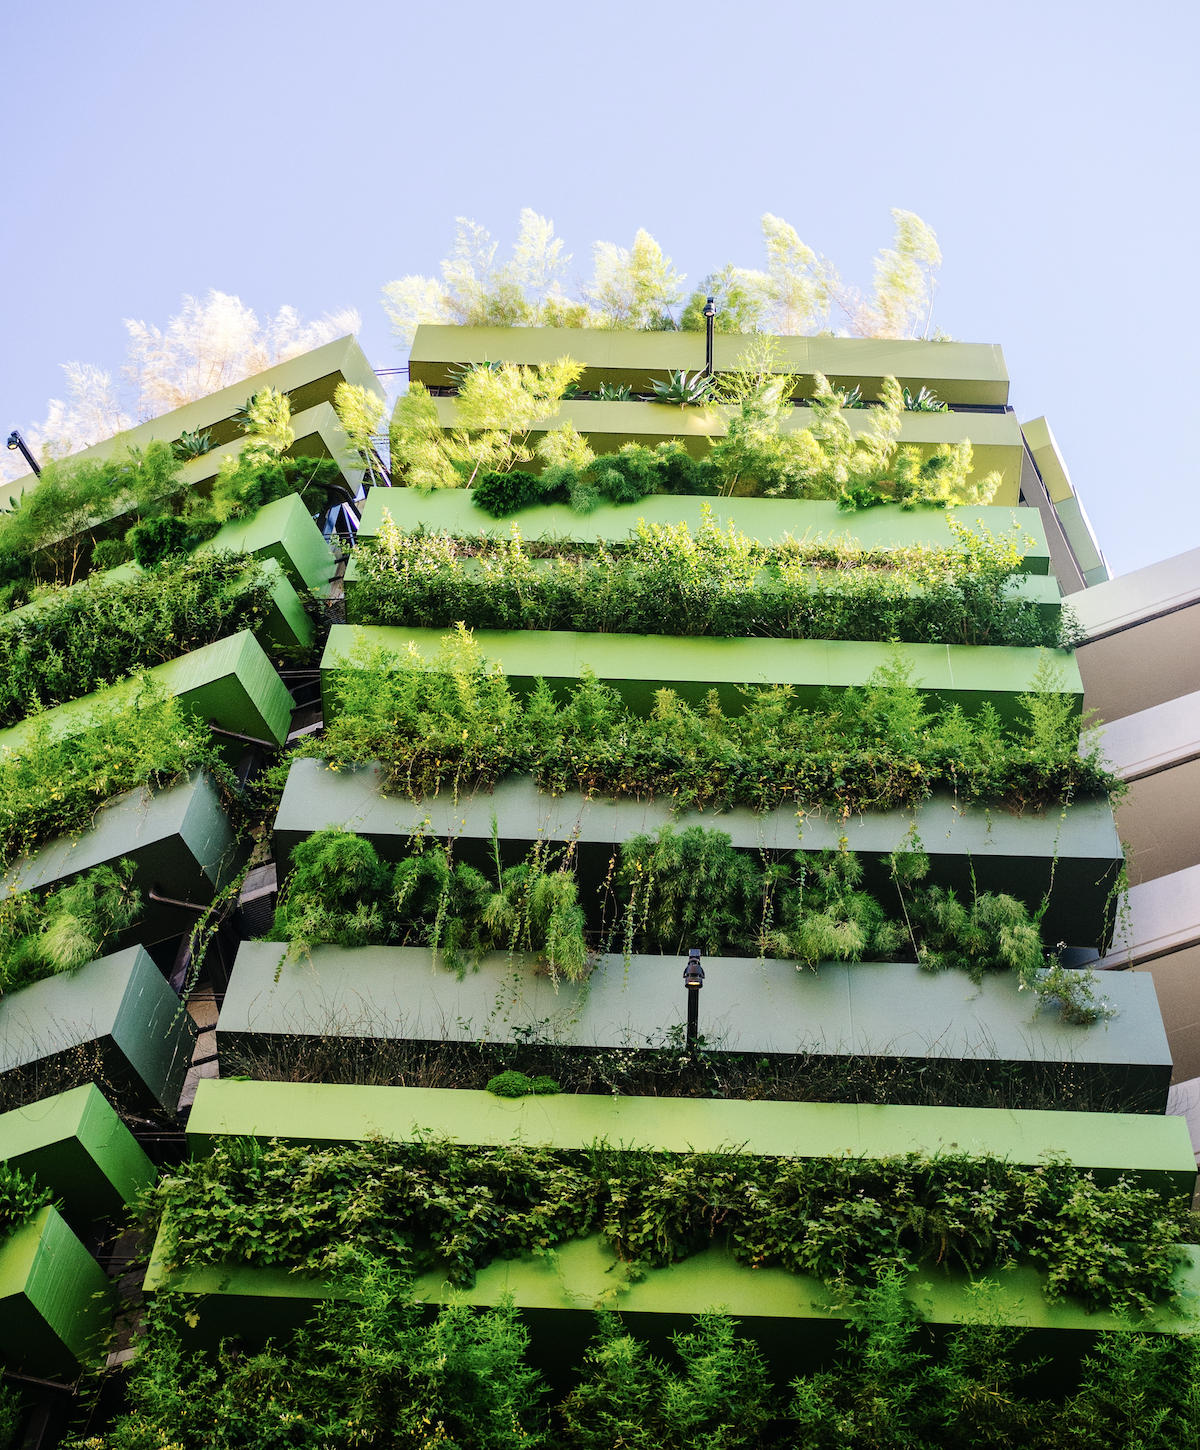 Et bilde av en bærekraftig bygning: "Bærekraftig bygning" | Coor